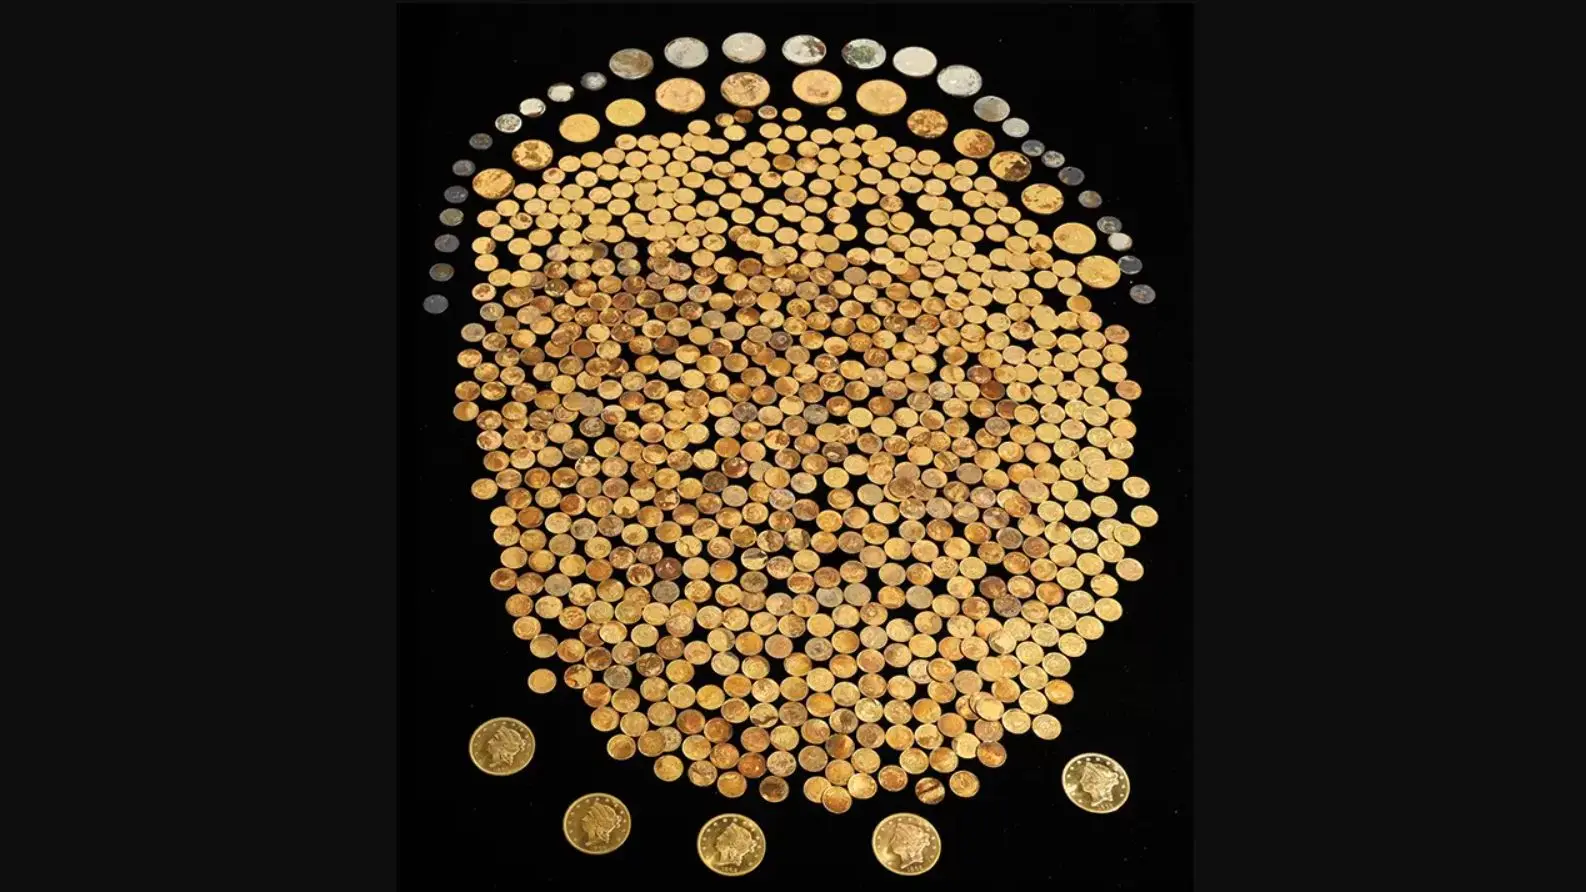 农民自家玉米田挖出700枚古金币 价值超百万美元